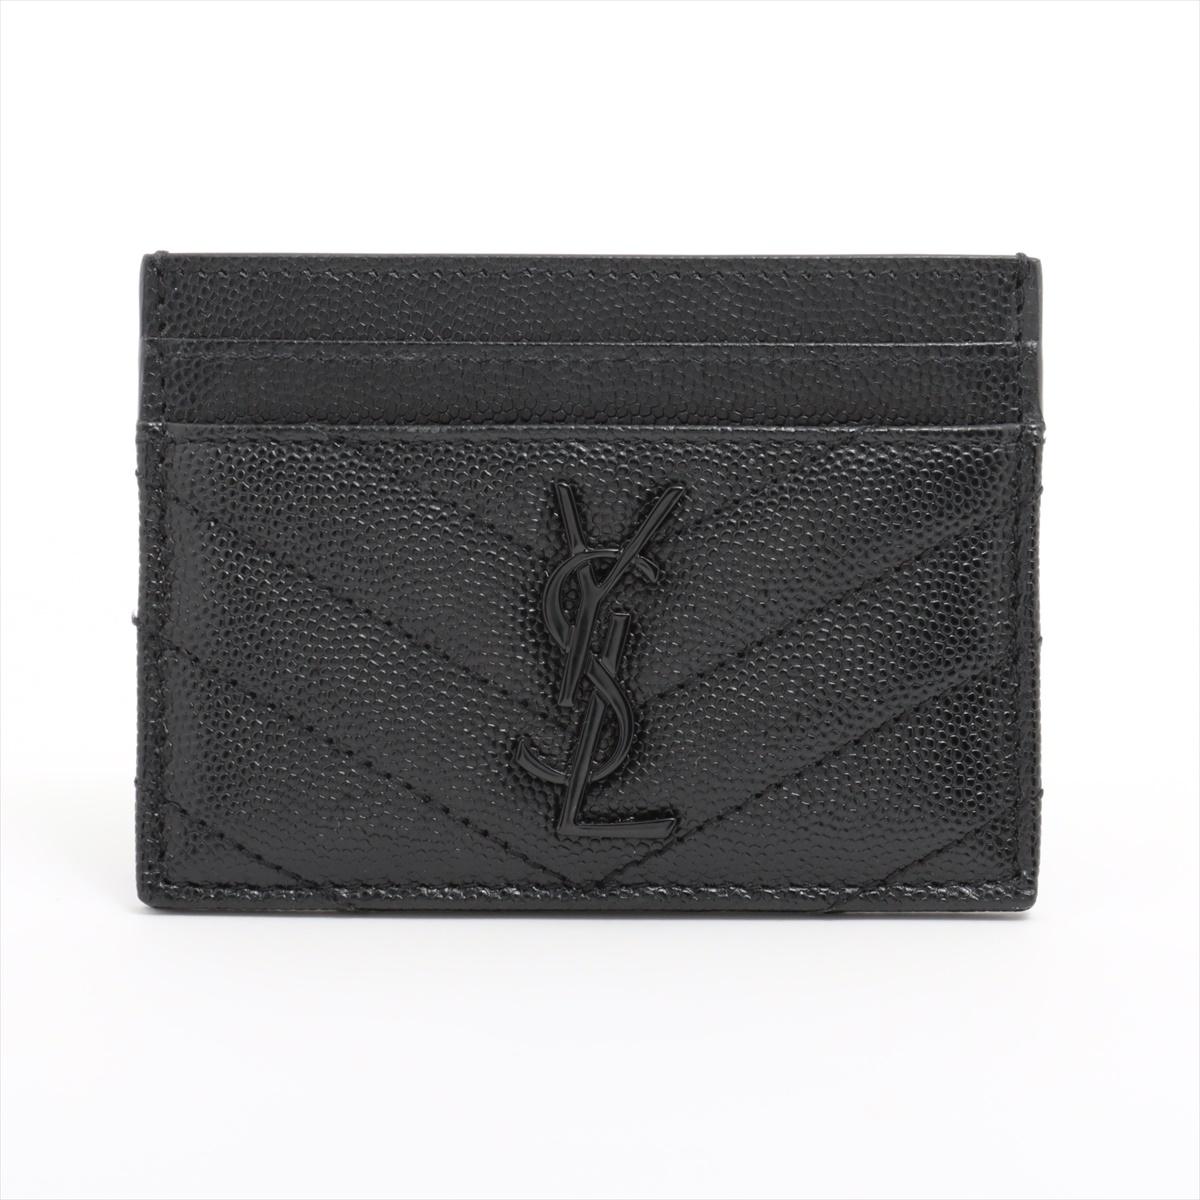 Das Saint Laurent V Stitch Leder-Kartenetui in Schwarz ist ein elegantes und raffiniertes Accessoire, das für das minimalistische und dennoch luxuriöse Design der Marke steht. Das aus glattem Leder gefertigte Kartenetui ist auf der Vorderseite mit